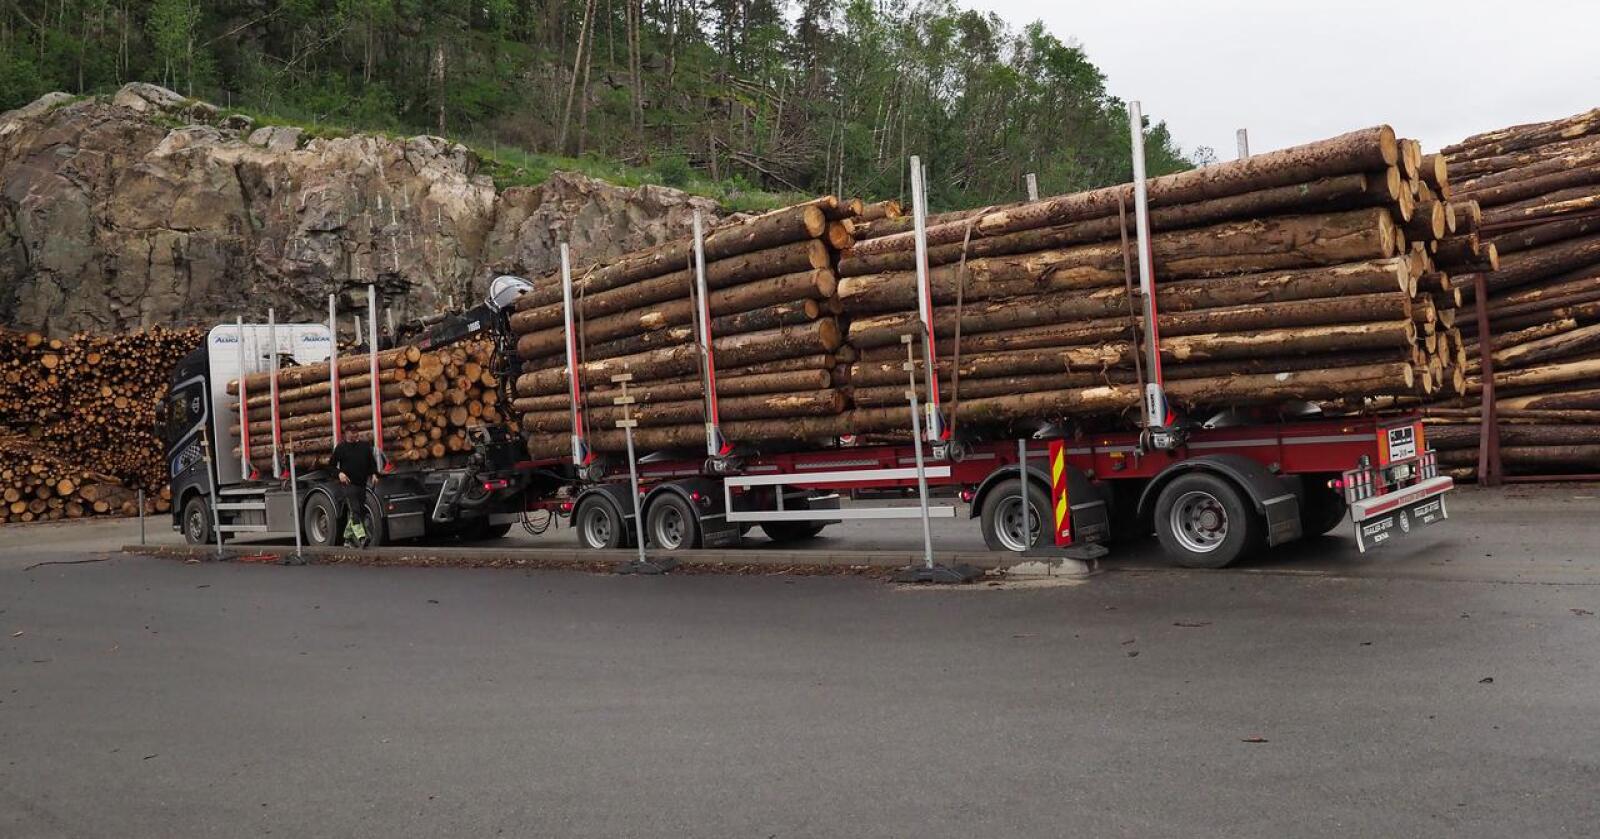 Tvilsamt: Skogbruket si miljøsertifisering har hol, skriv innsendaren. Foto: Siri Juell Rasmussen